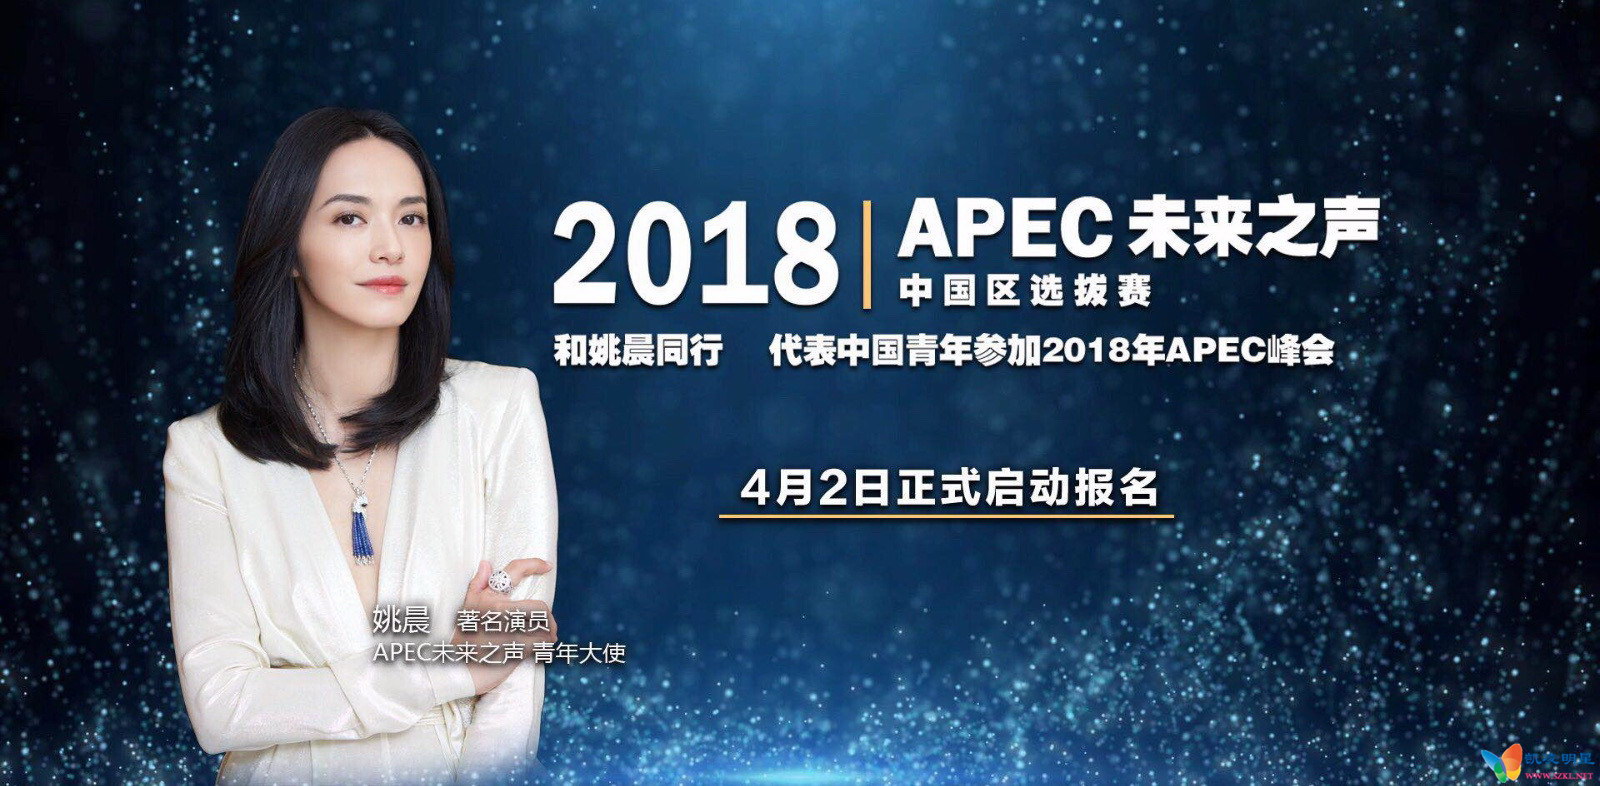 姚晨出任apec未来之声青年大使 鼓励中国青年向世界发声vpic:201804/Yao_Chen_242c2b